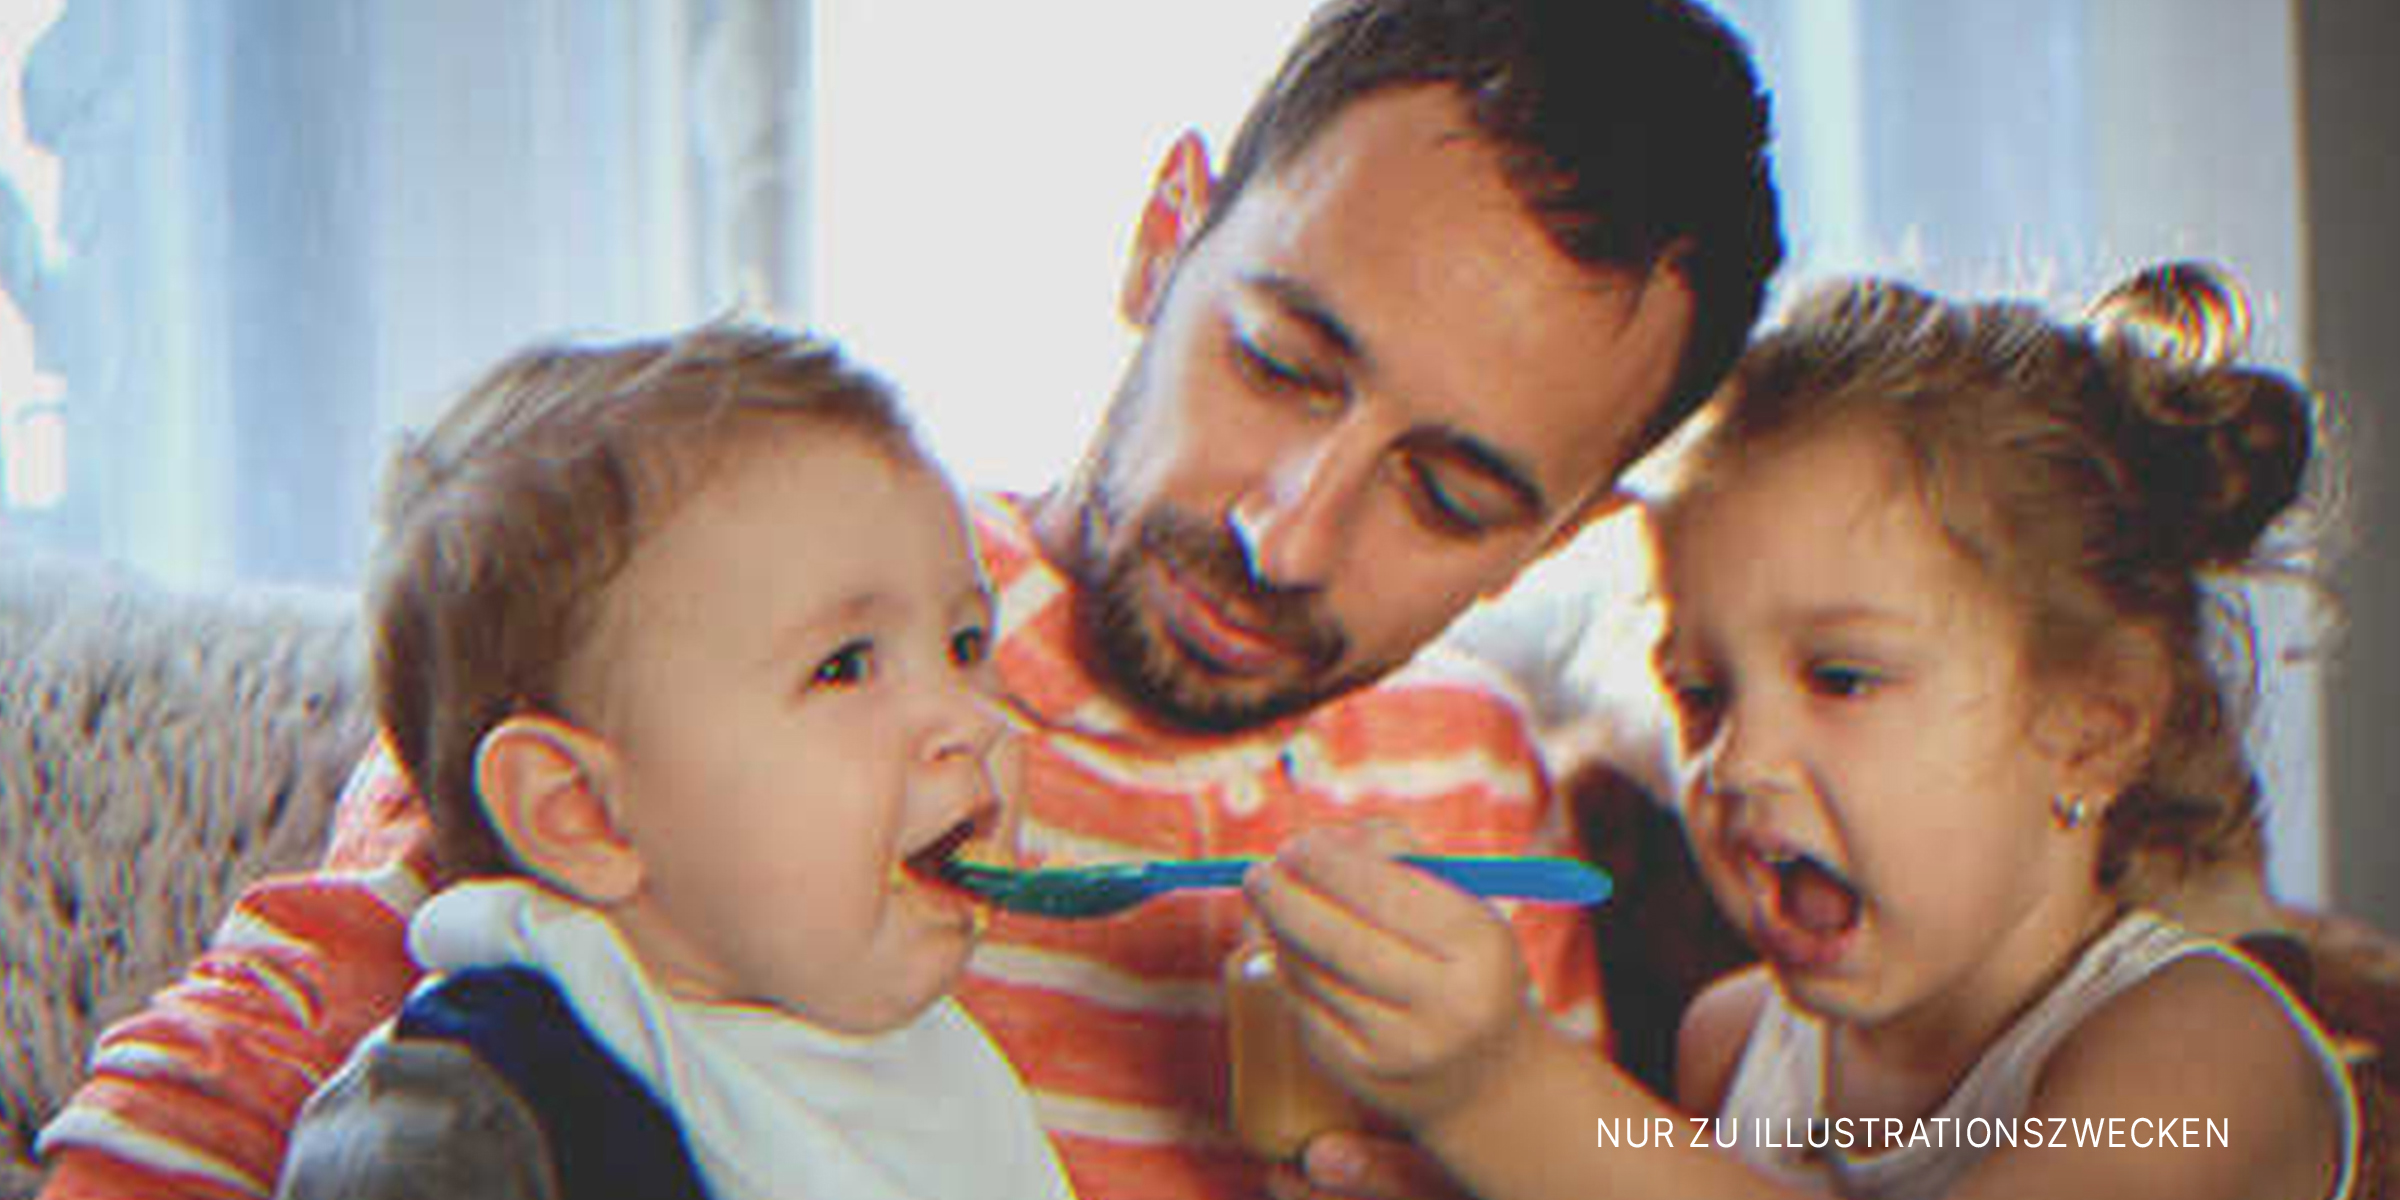 Ein Mann mit zwei kleinen Kindern | Quelle: Getty Images